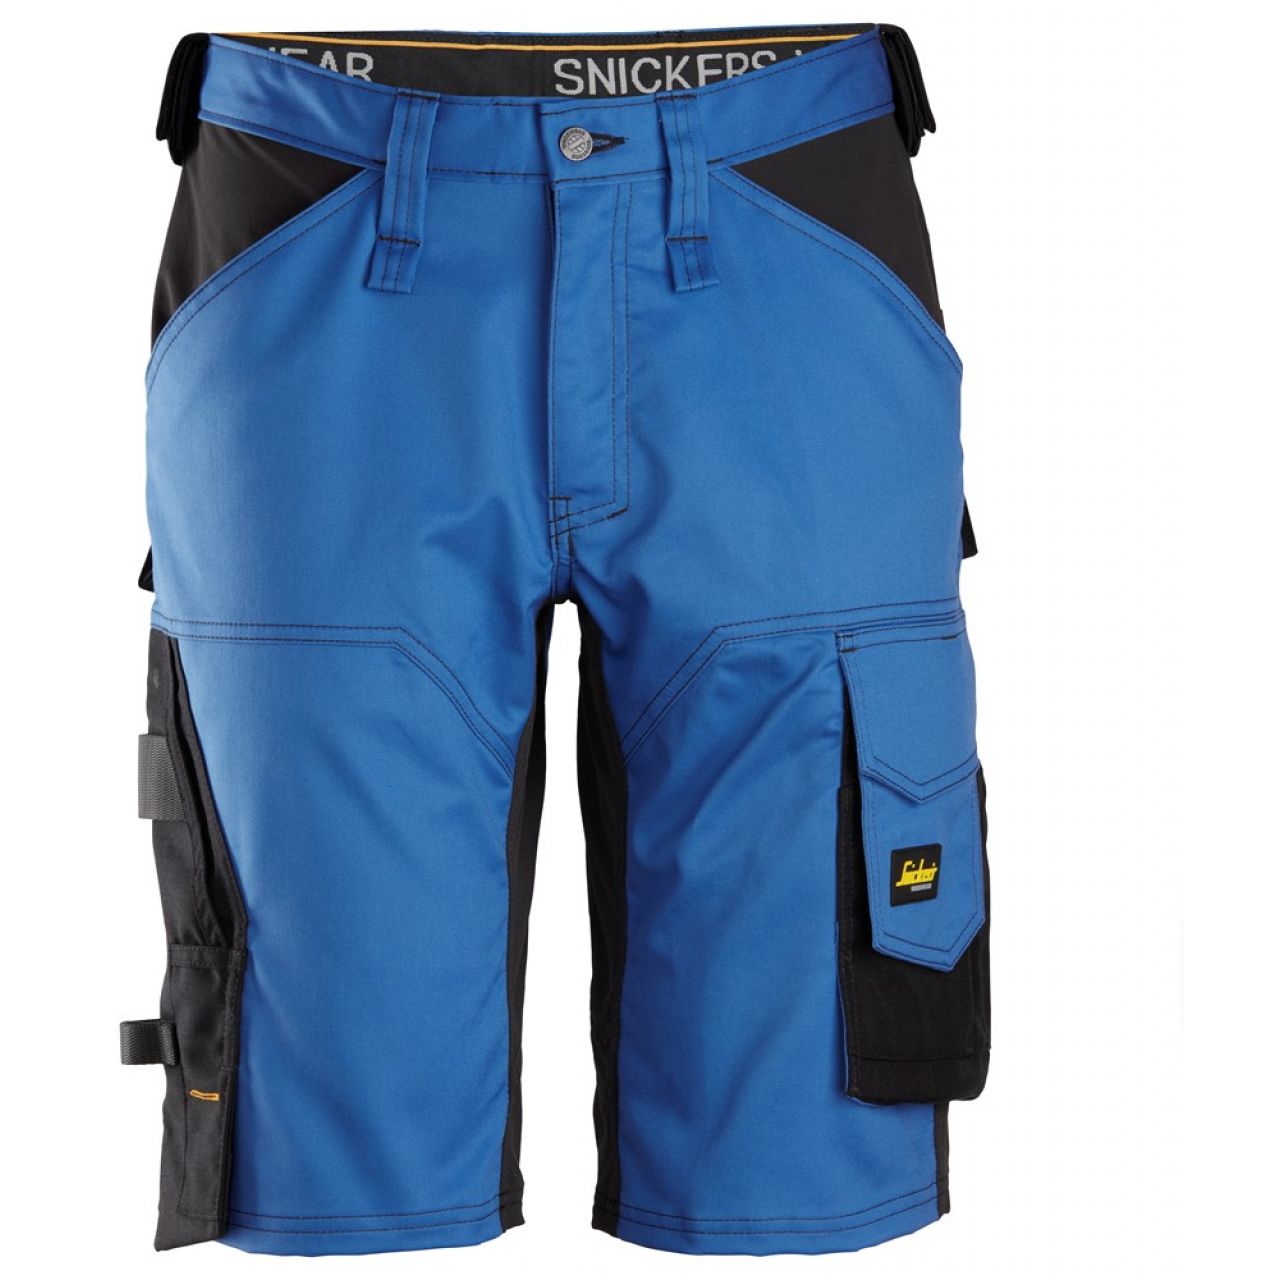 Pantalon corto elastico holgado AllroundWork azul-negro talla 056